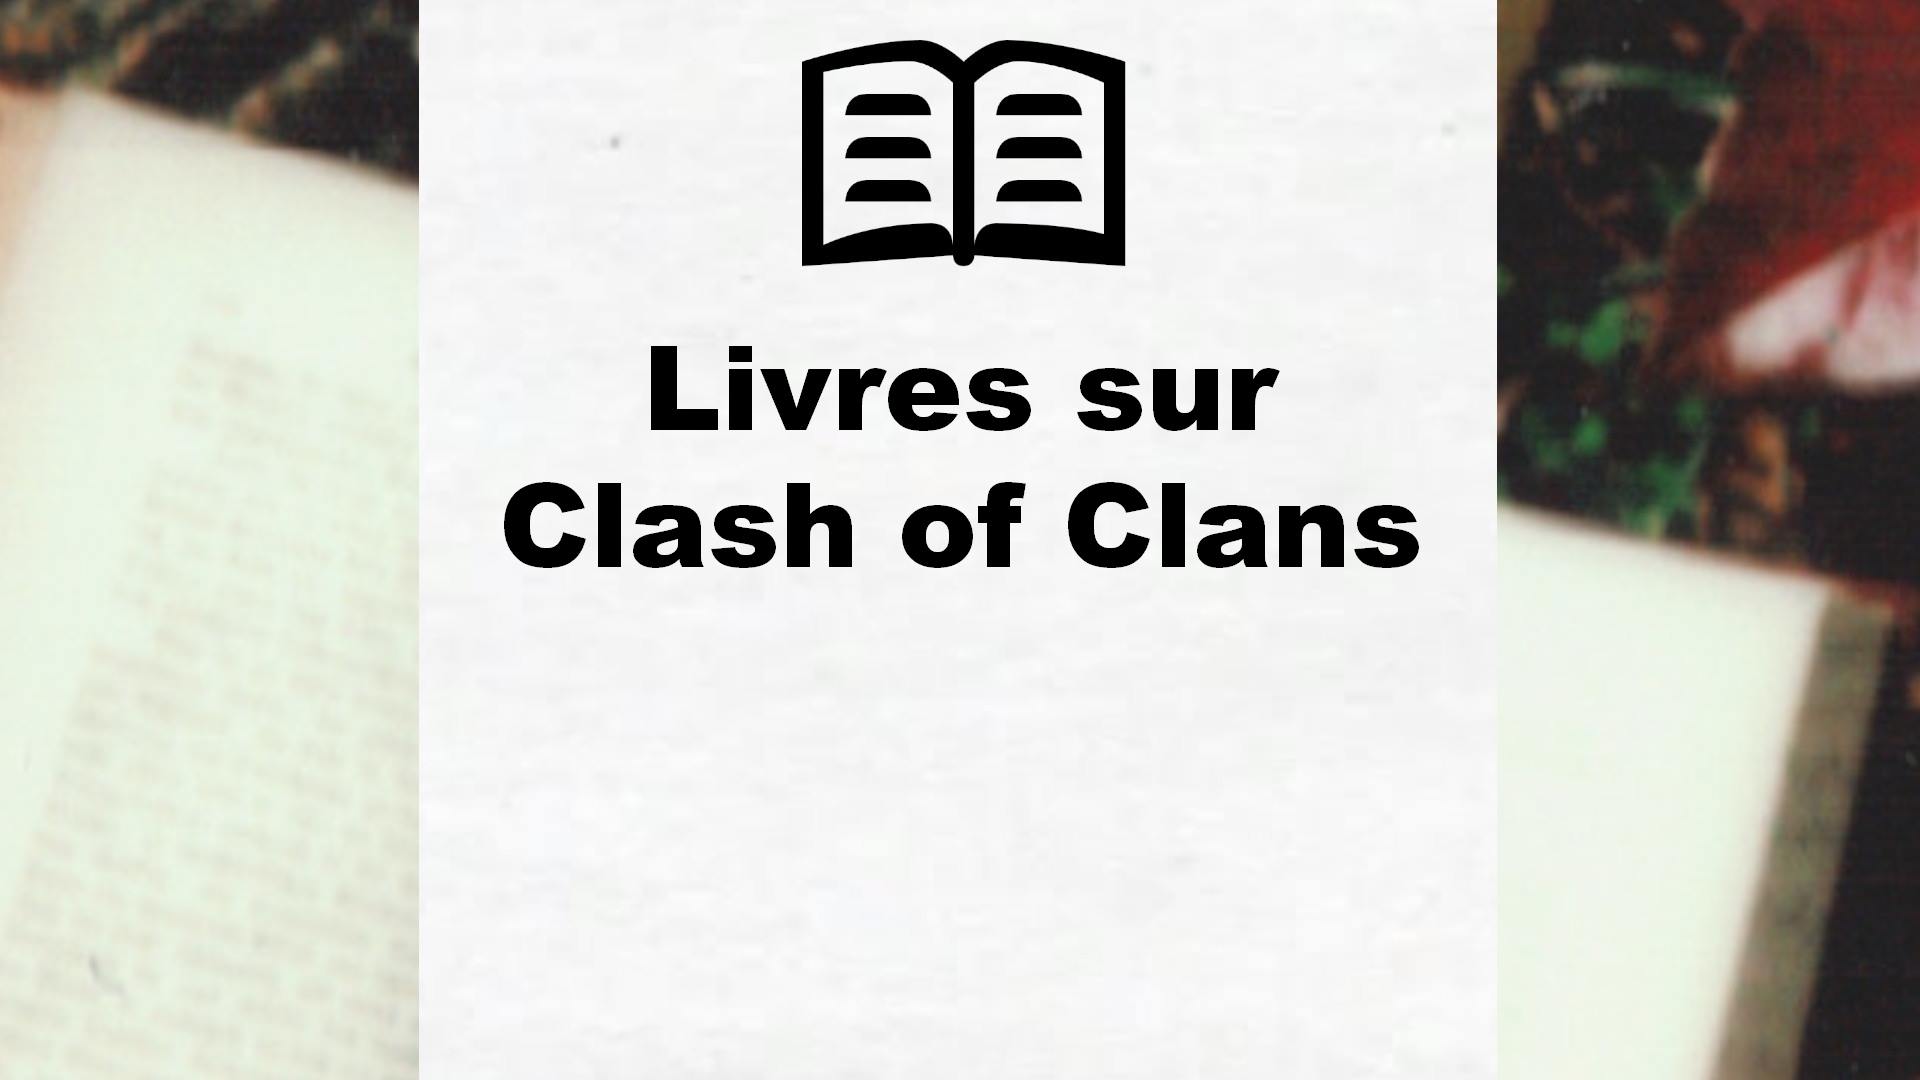 Livres sur Clash of Clans